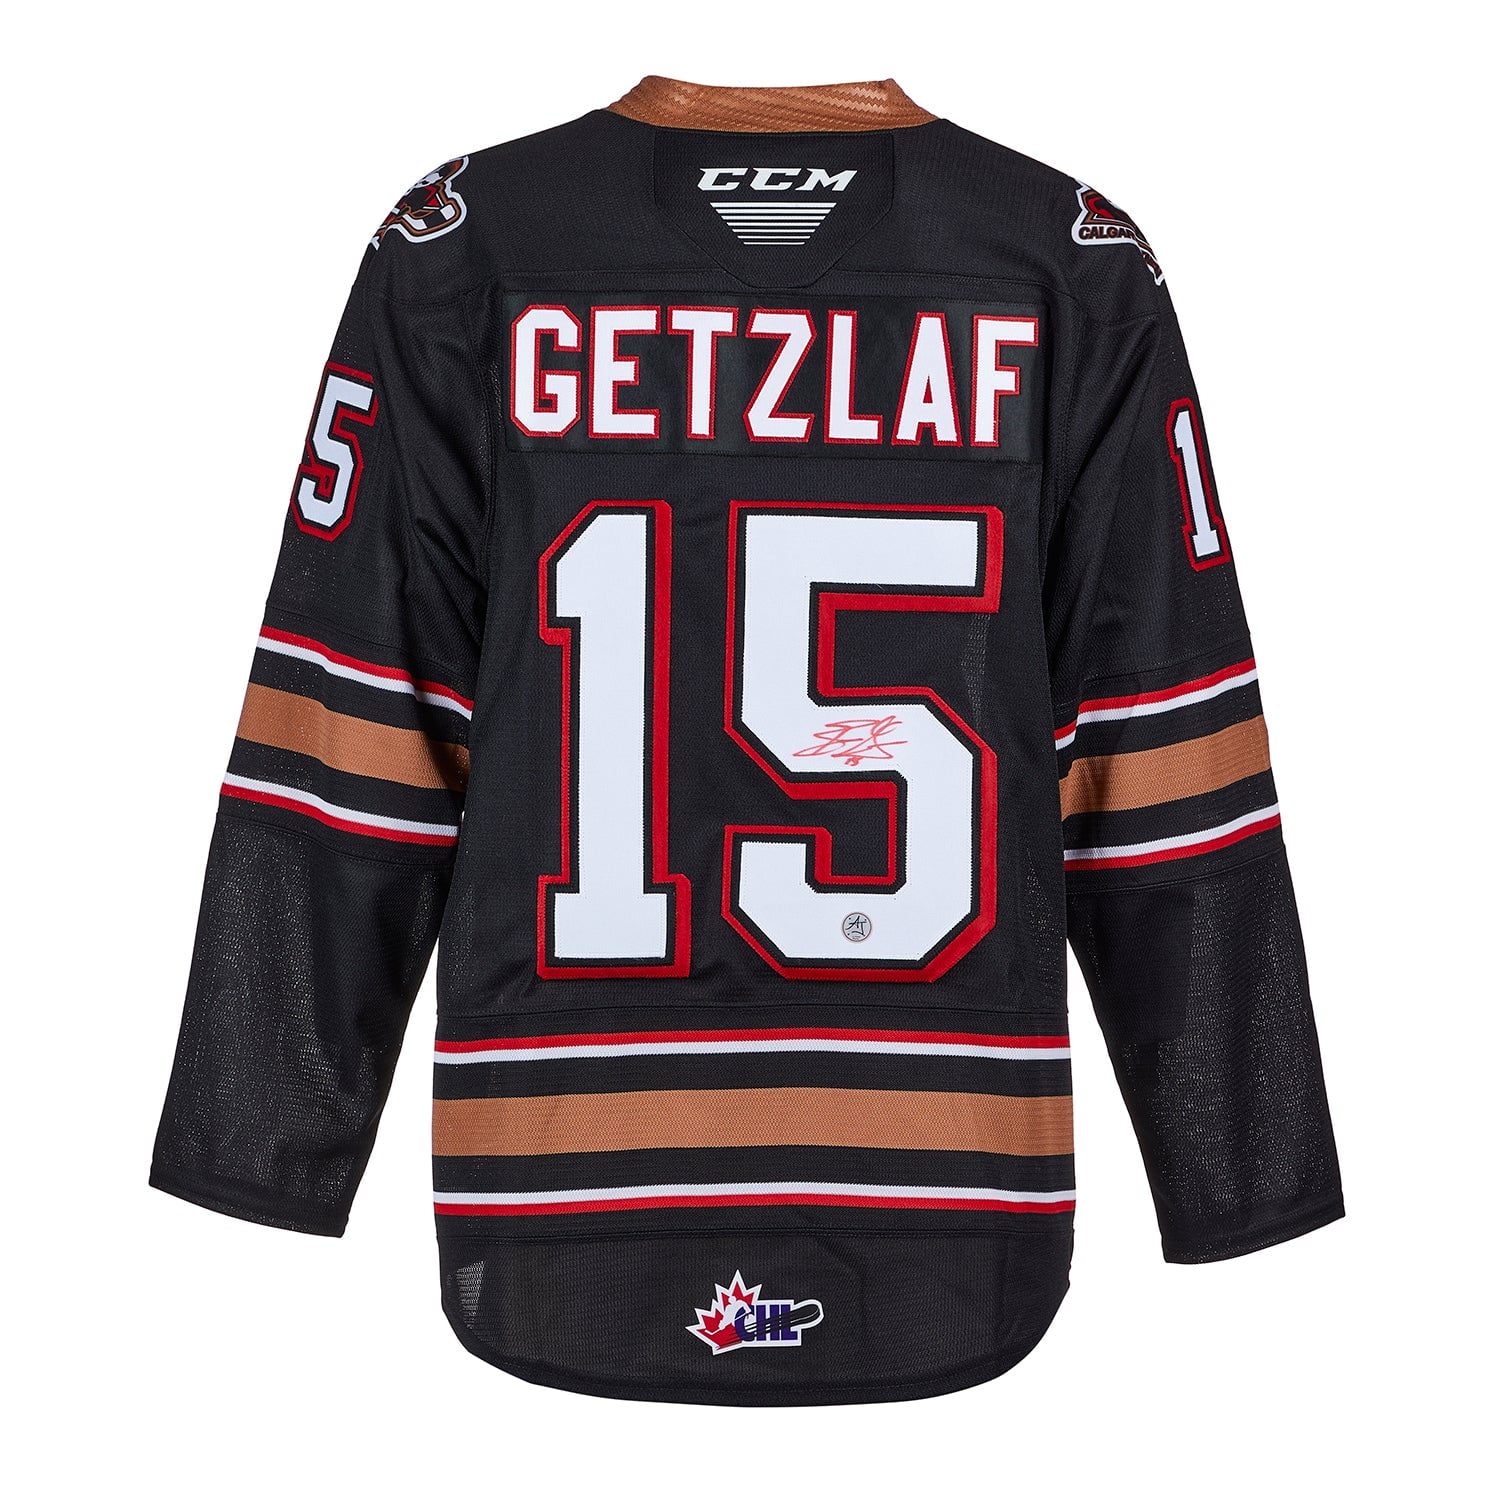 Ryan Getzlaf Memorabilia, Ryan Getzlaf Collectibles, NHL Ryan Getzlaf Signed  Gear